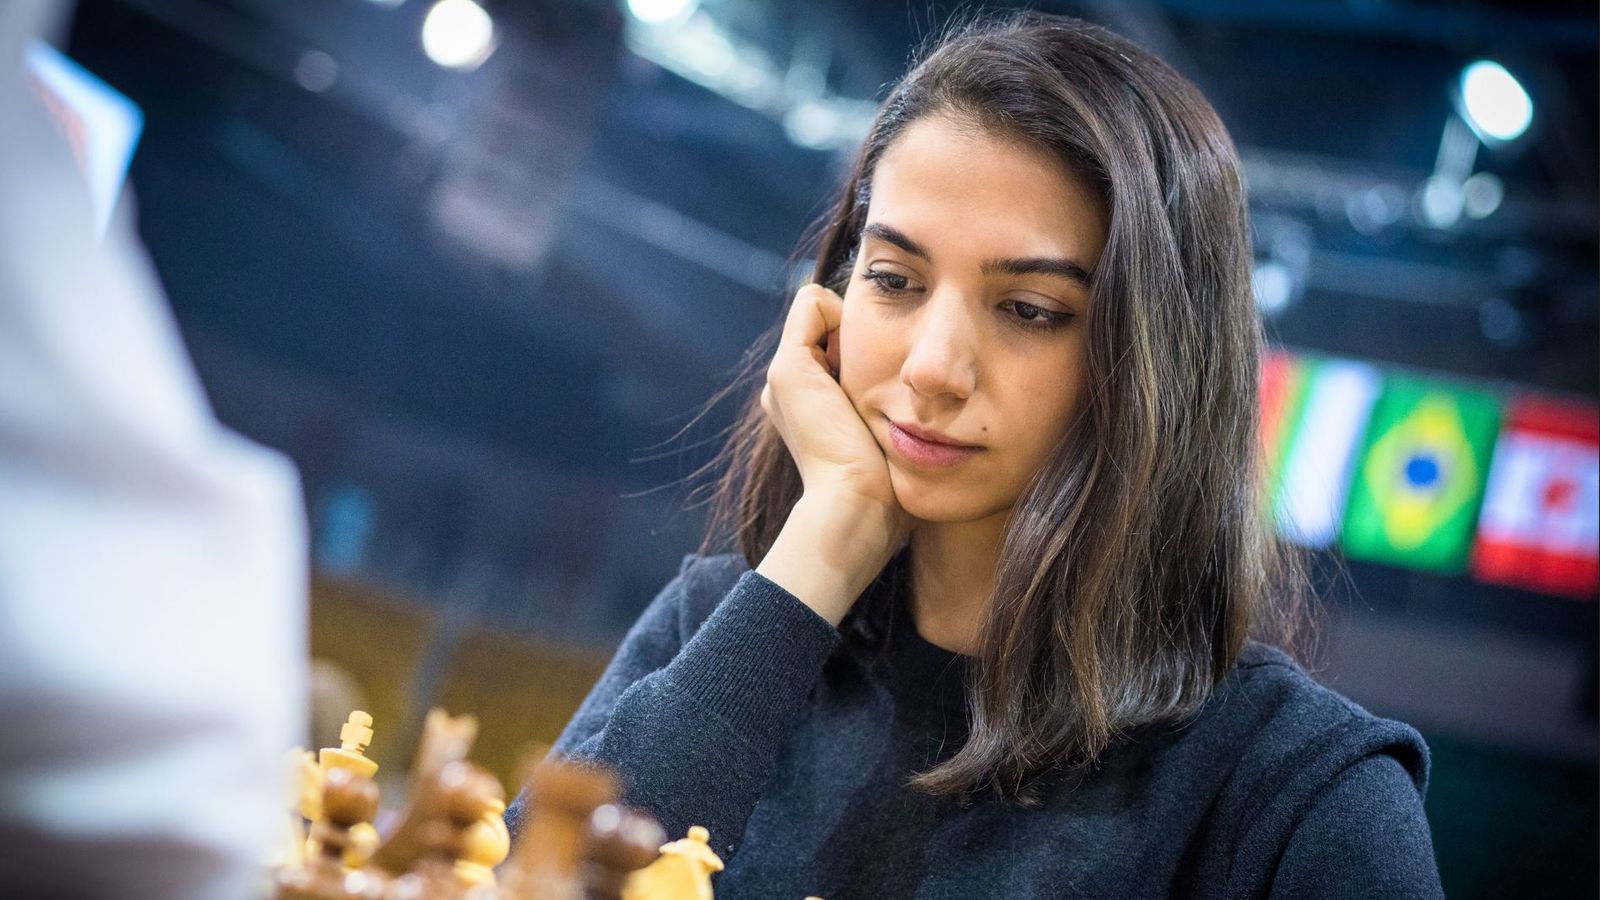 Les joueuses d’échecs iraniennes Sara Khadem et Atousa Pourkashiyan participent à un tournoi international sans hijab |  Nouvelles du monde